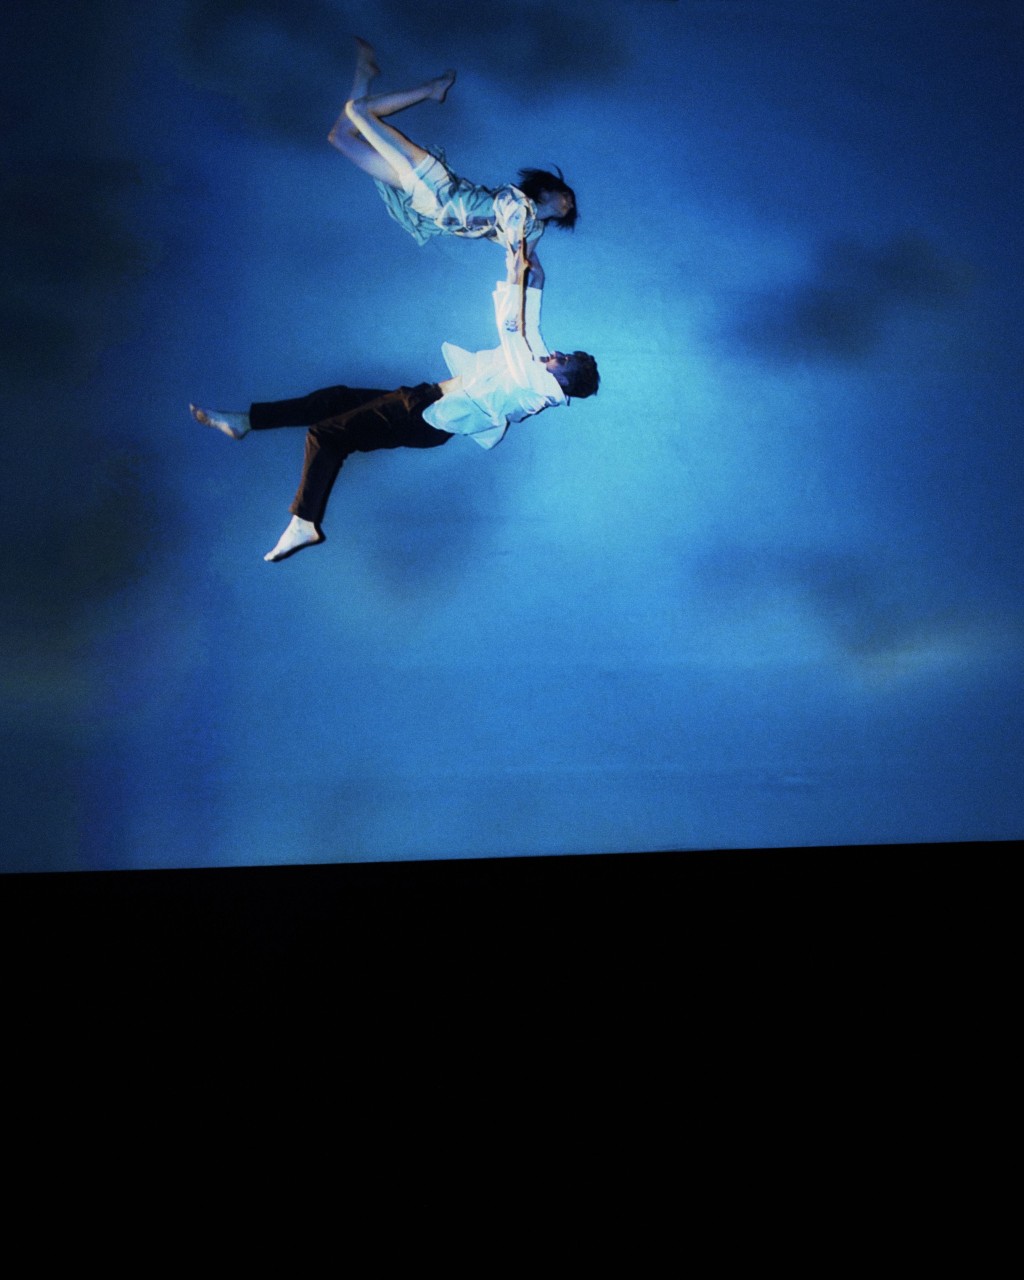 飾演情侶的舞者在藍色空中表演現場舞蹈。